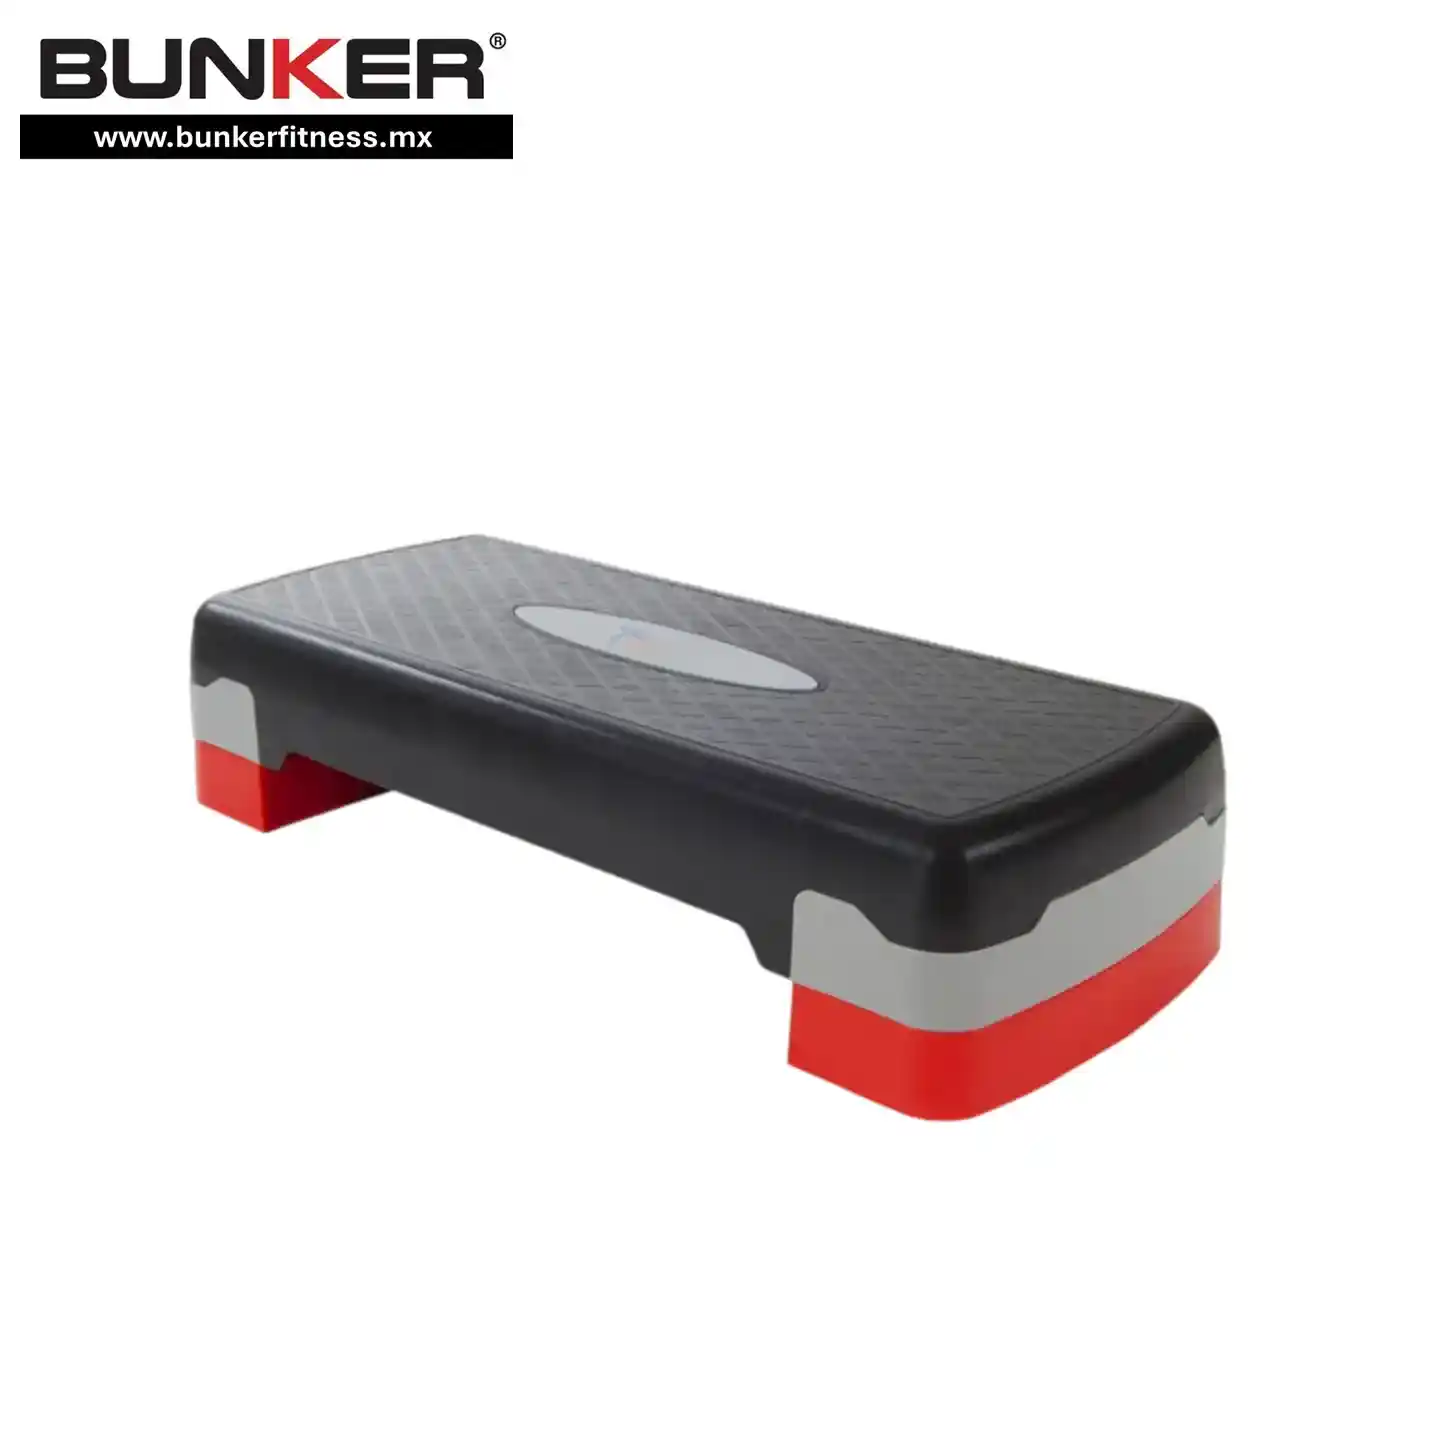 step negro y rojo para deportistas para ejercicio y gimnasio en casa bunker gym bunker fitness